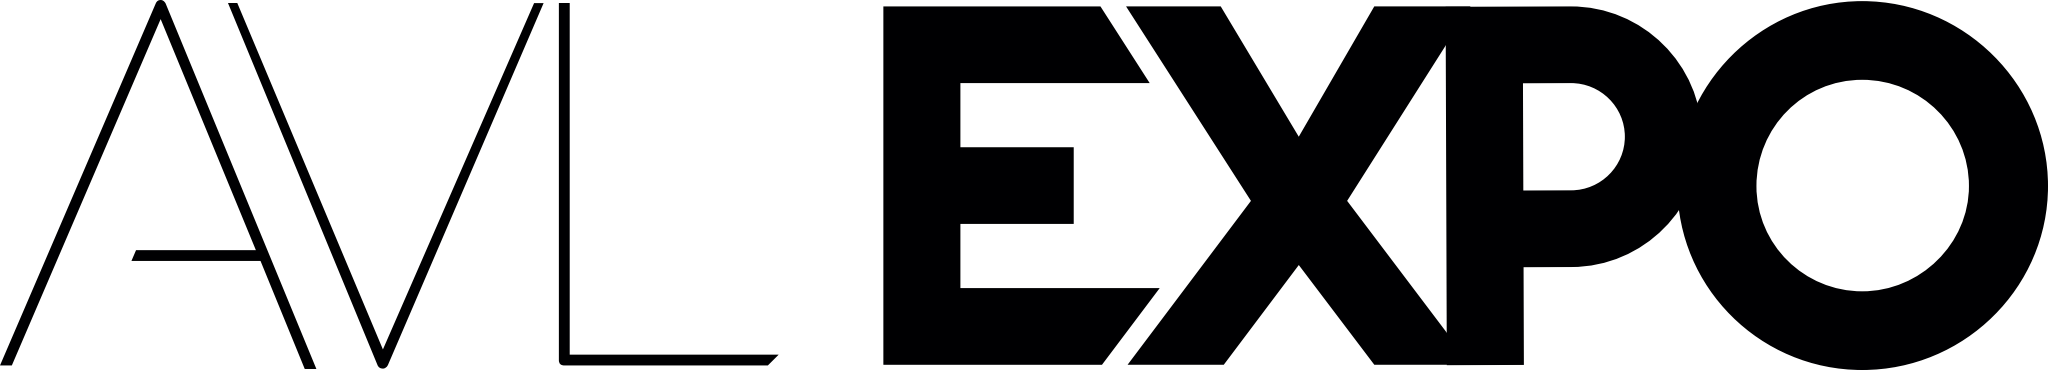 AVL Expo Logo